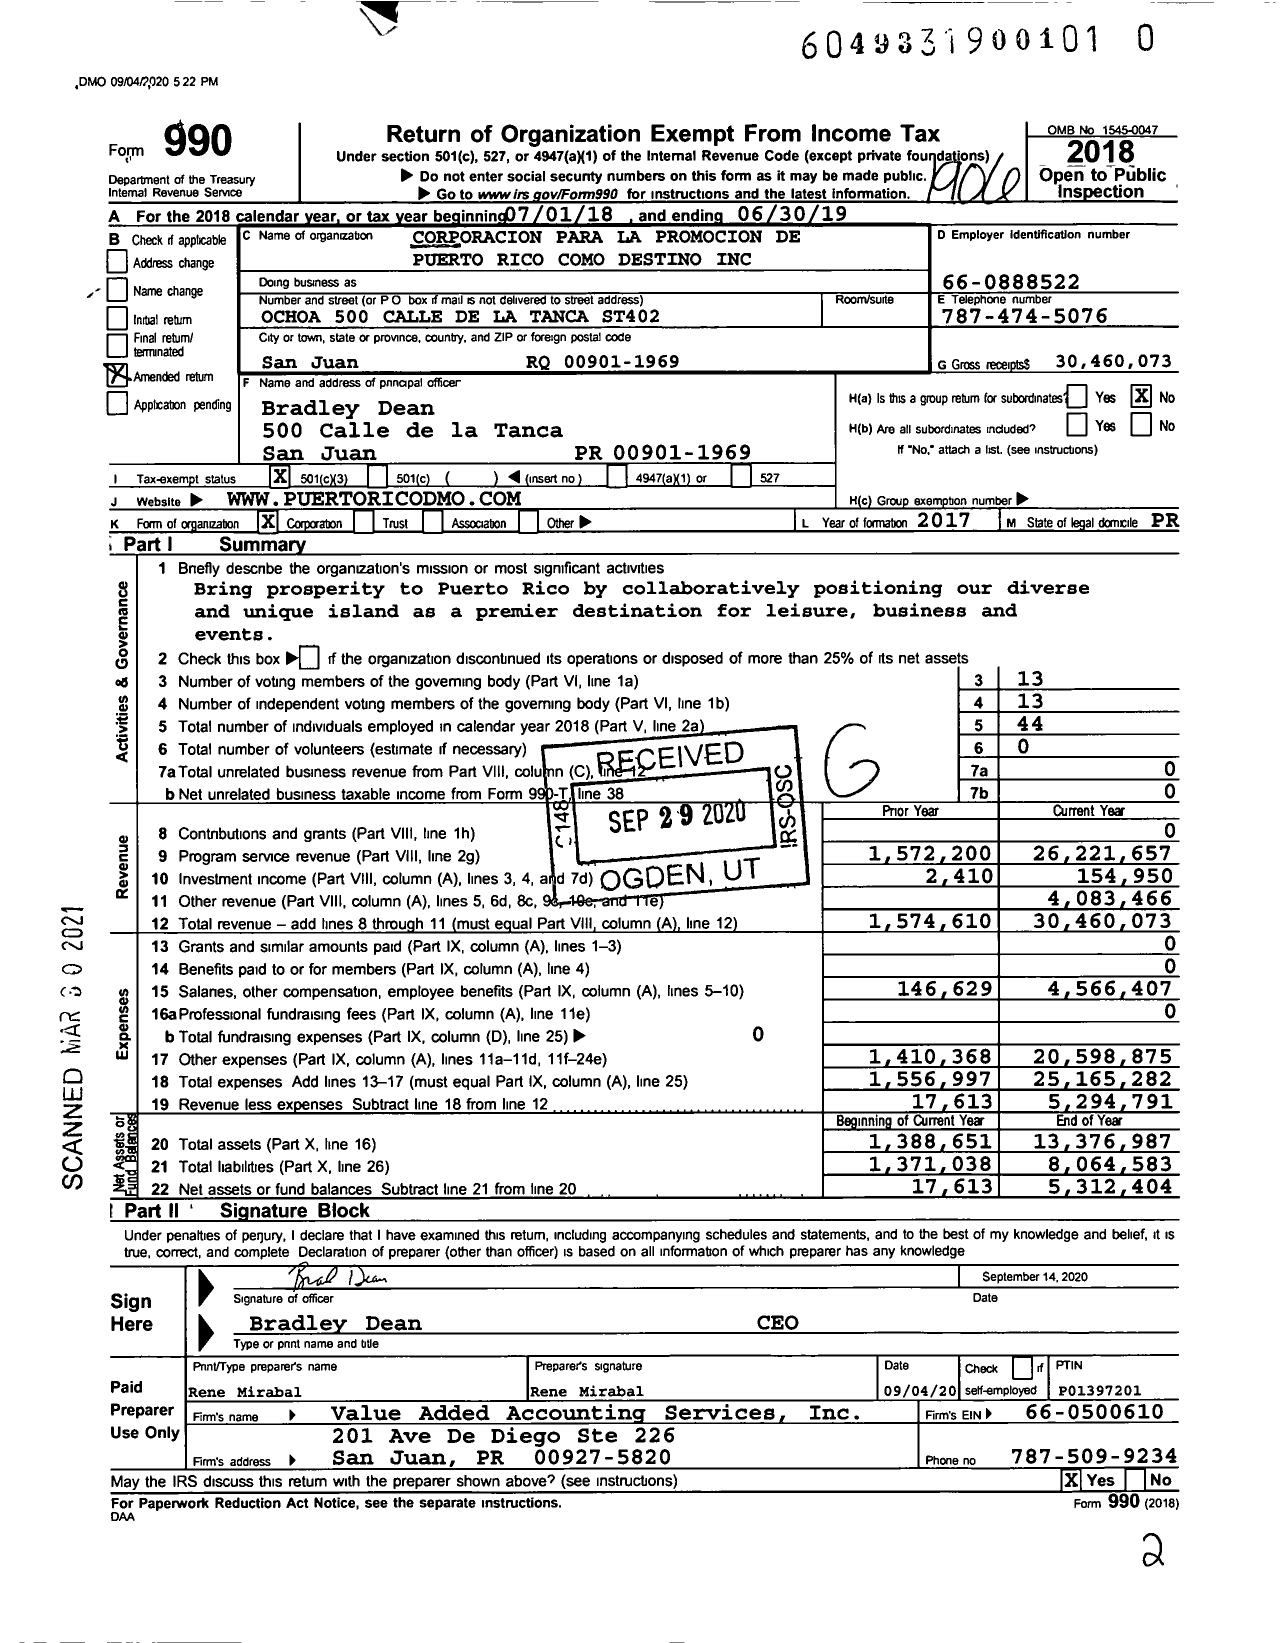 Image of first page of 2018 Form 990 for Corporacion Para La Promocion de Puerto Rico Como Destino